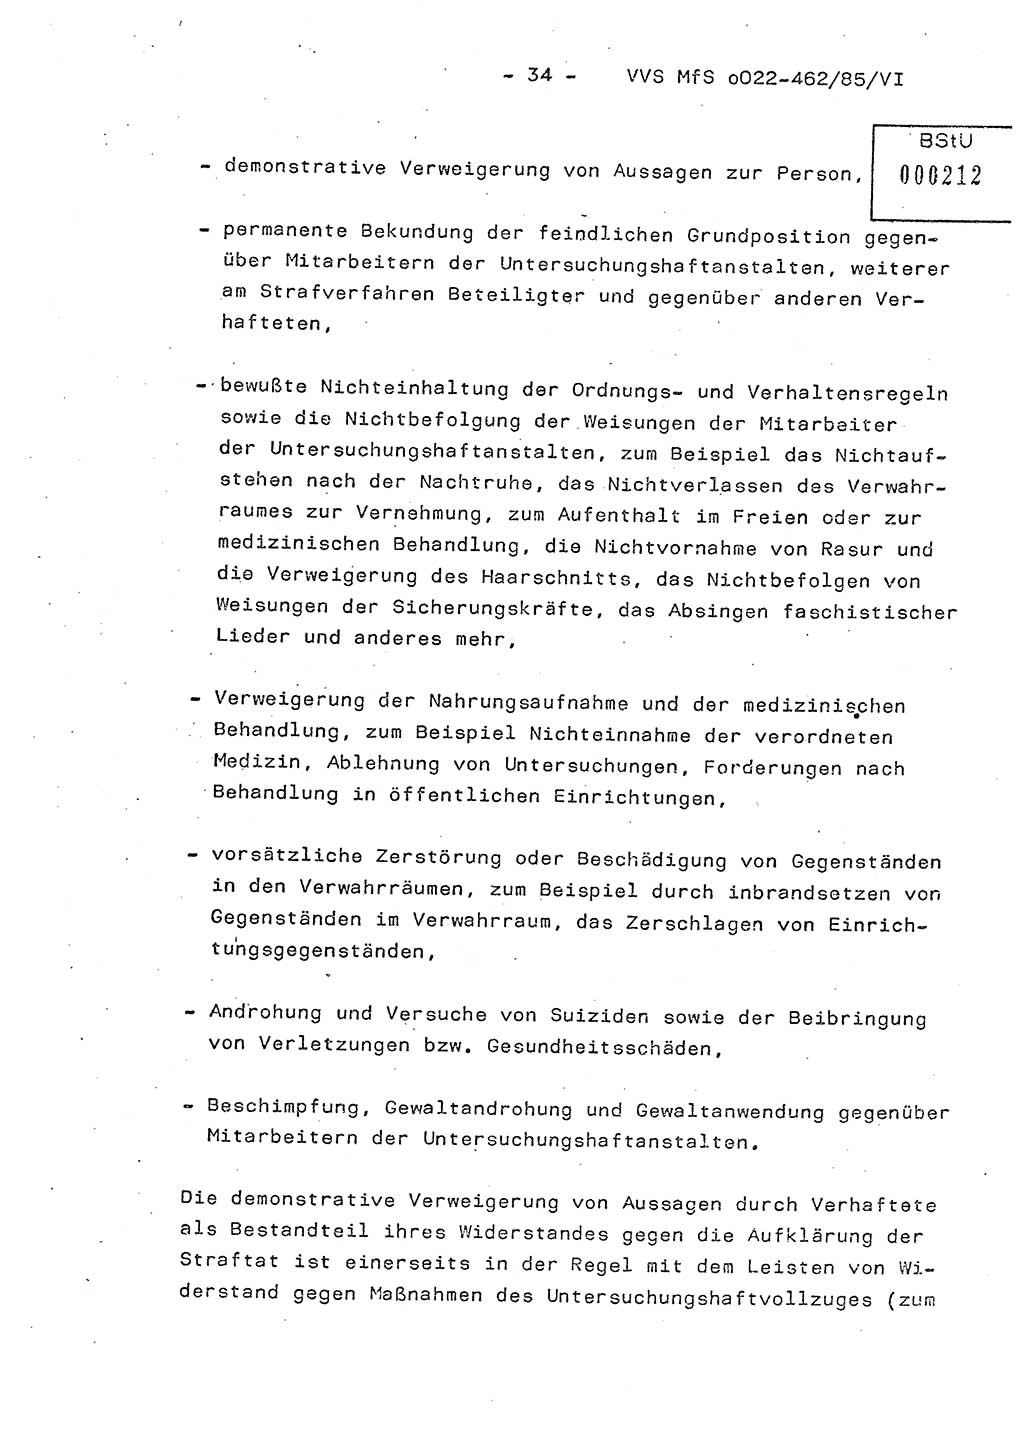 Der Untersuchungshaftvollzug im MfS, Schulungsmaterial Teil Ⅵ, Ministerium für Staatssicherheit [Deutsche Demokratische Republik (DDR)], Abteilung (Abt.) ⅩⅣ, Vertrauliche Verschlußsache (VVS) o022-462/85/Ⅵ, Berlin 1985, Seite 34 (Sch.-Mat. Ⅵ MfS DDR Abt. ⅩⅣ VVS o022-462/85/Ⅵ 1985, S. 34)